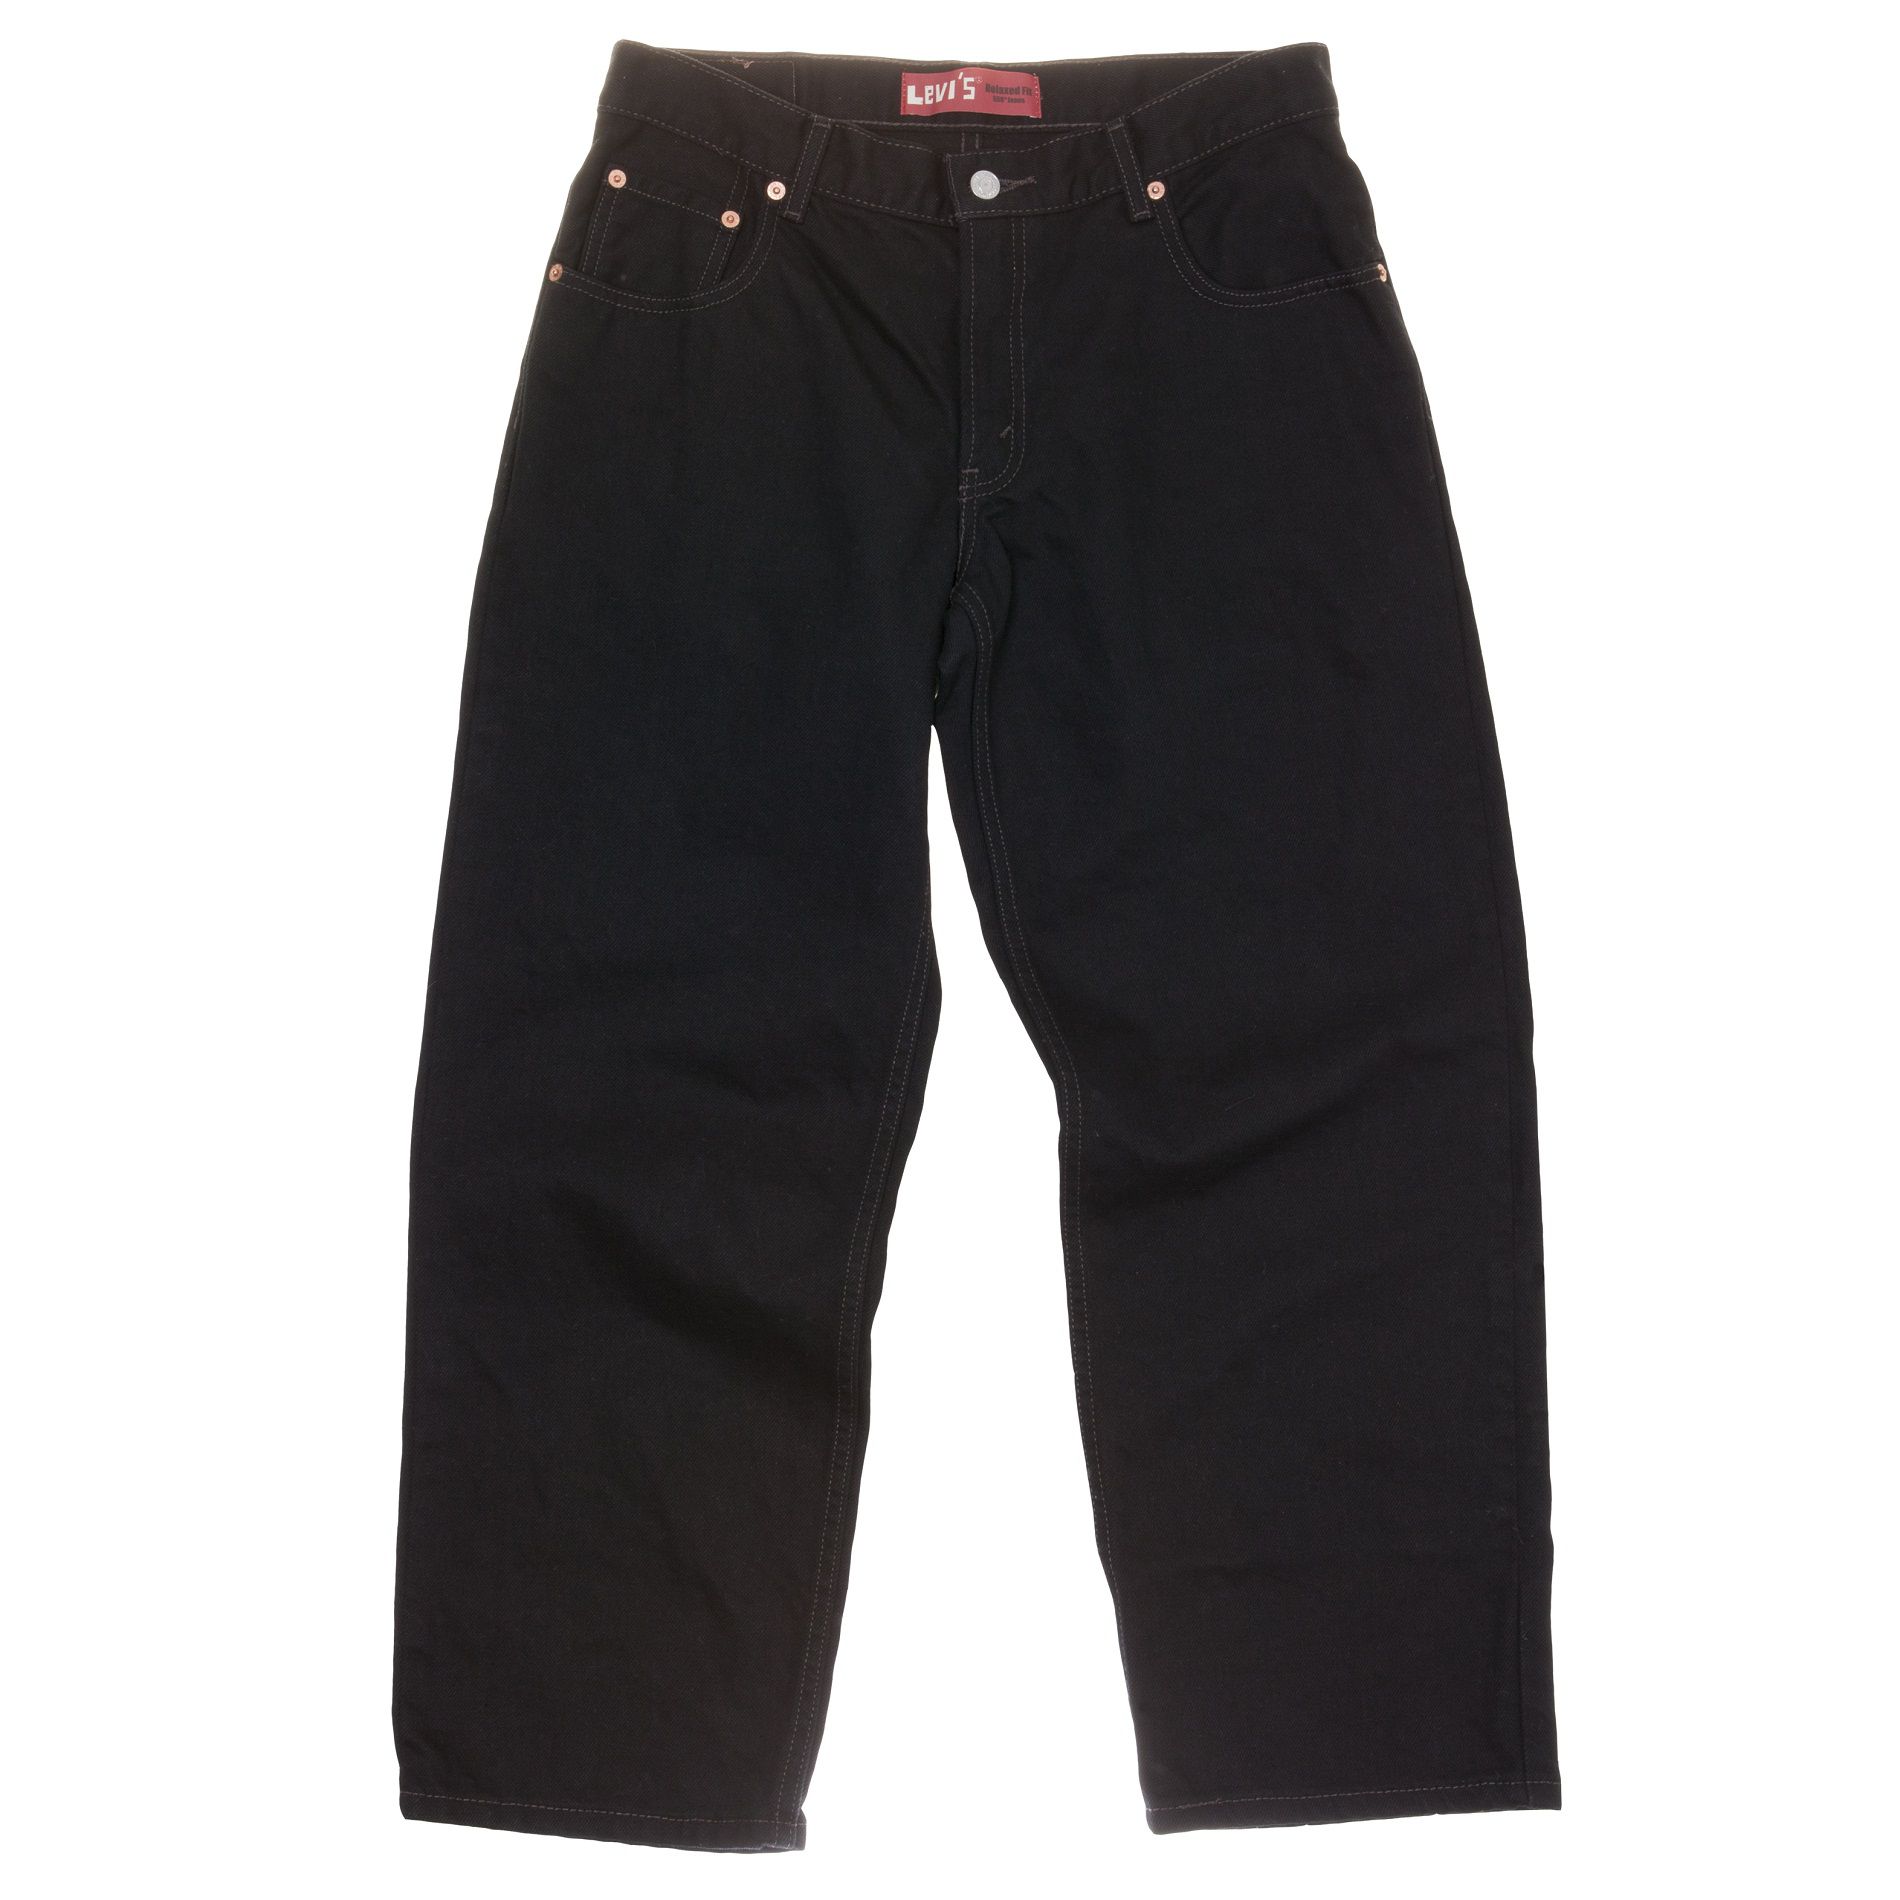 Levi's ® Husky Boy's 527™ Jeans - Kids - Kids' Clothing - Boys ...